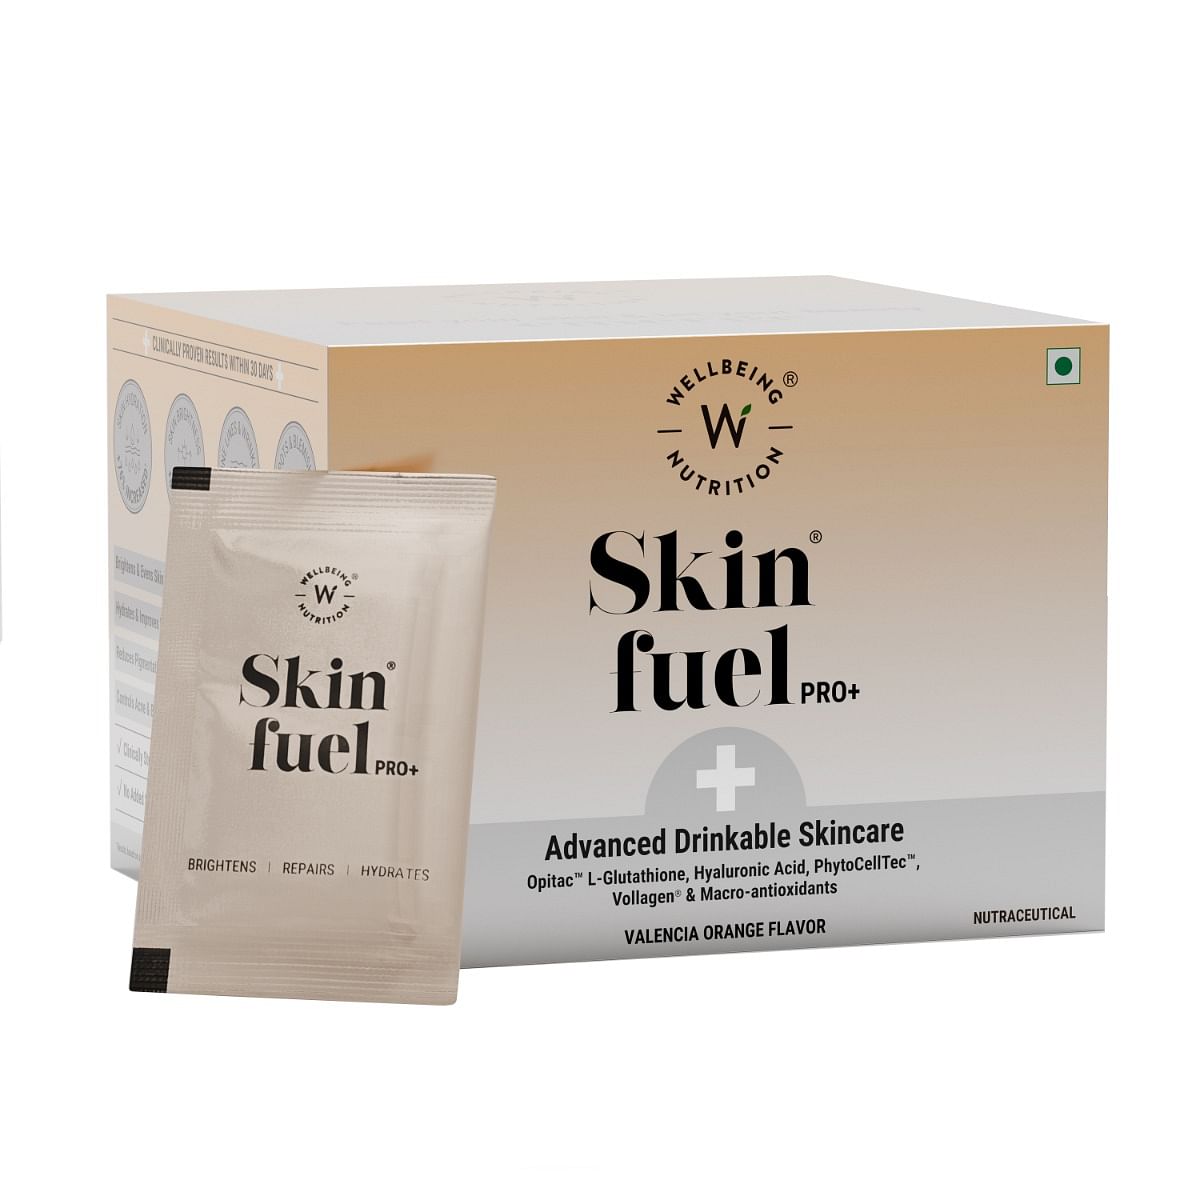 

Wellbeing Nutrition Skin Fuel Pro+ | Glutathione, Vit C & E, CoQ10, Vollagen & PhytoCellTech | Reduced Pigmentation & Dark Spots, Brightens Skin To...